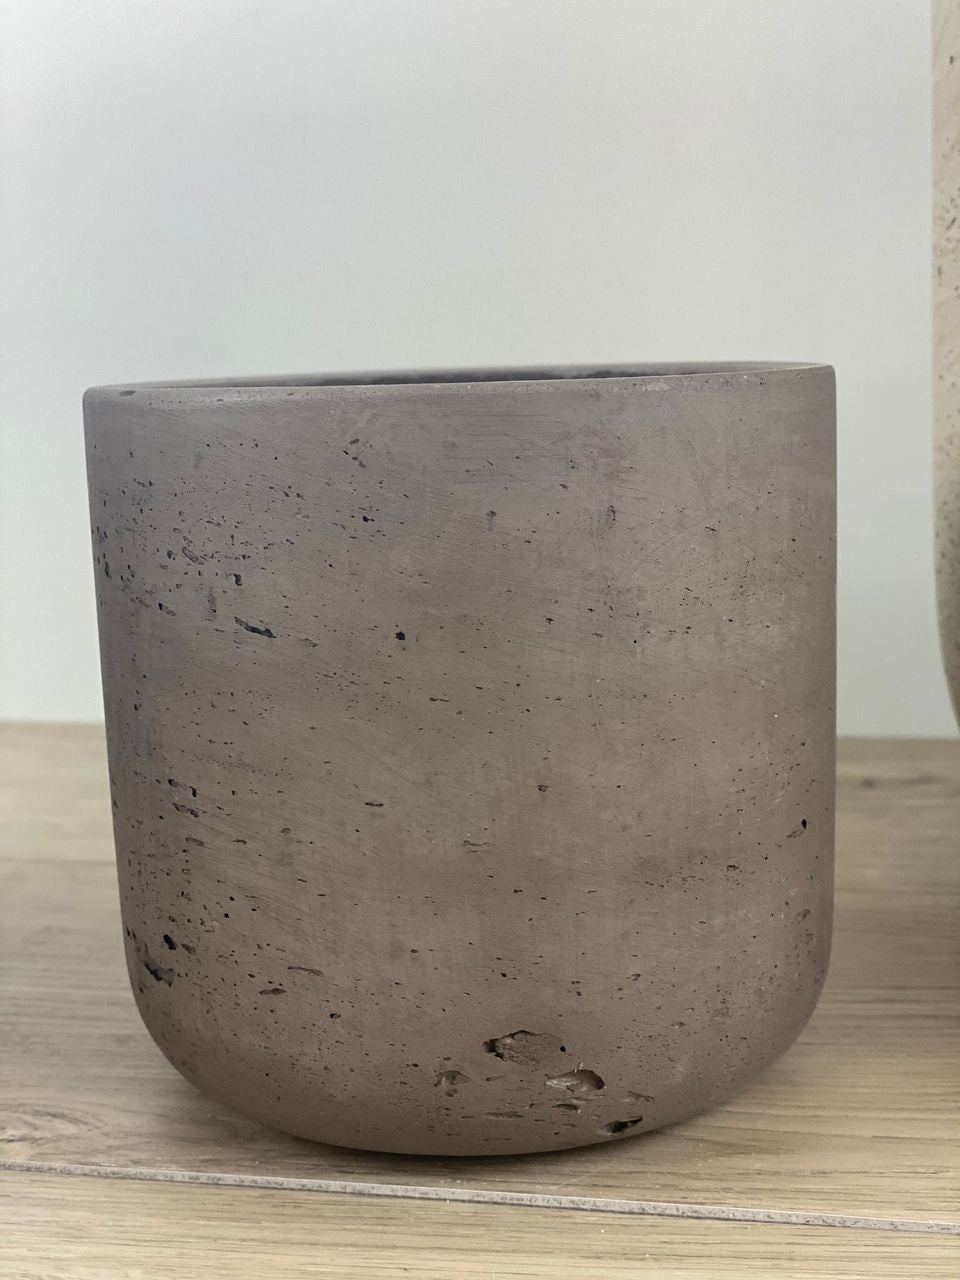 Brown Cement Quarry Pots